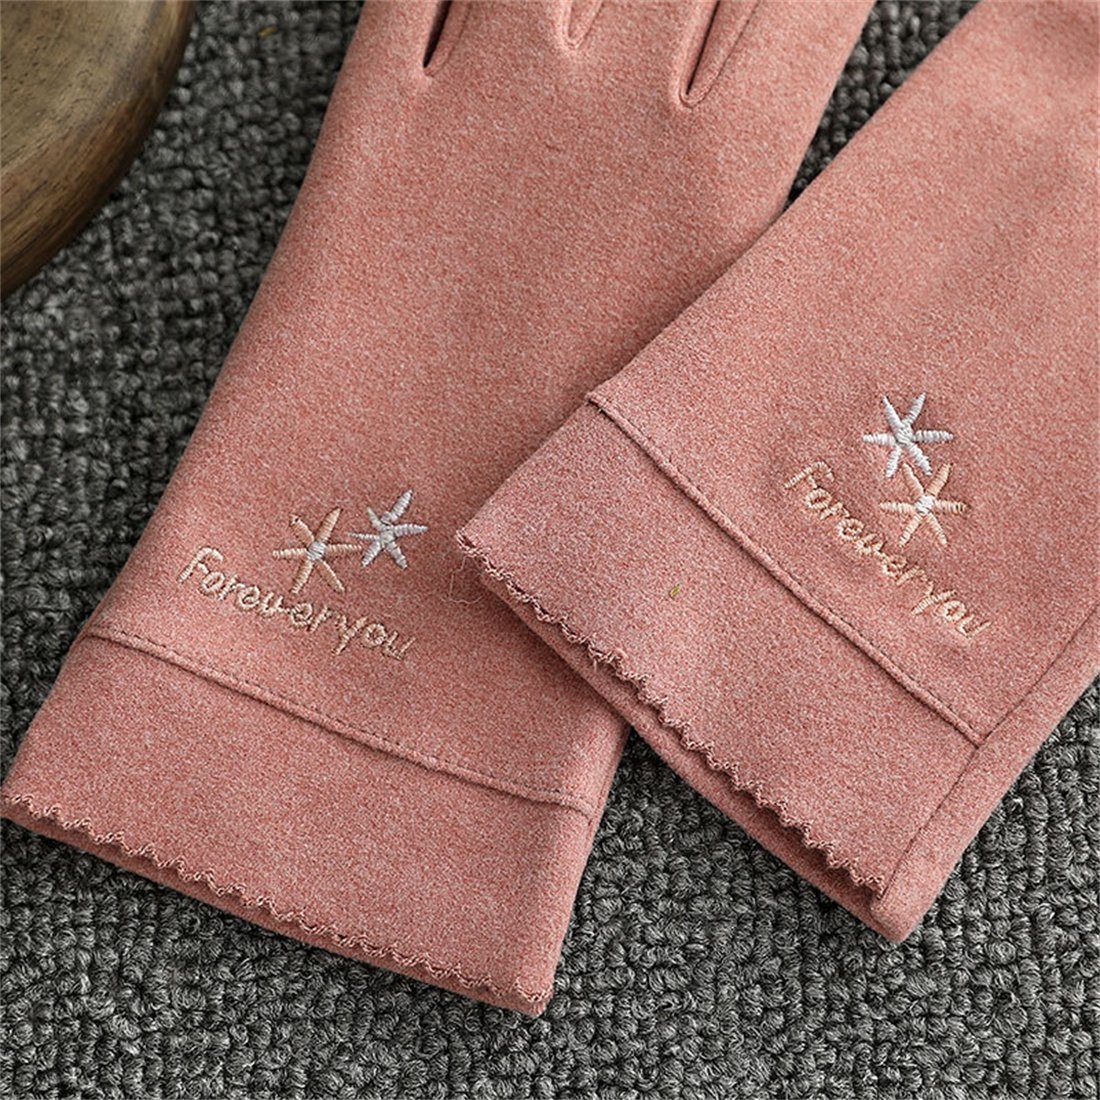 Damenmode Touchscreen Reithandschuhe, Winter Grau Warme Fleecehandschuhe DÖRÖY Handschuhe